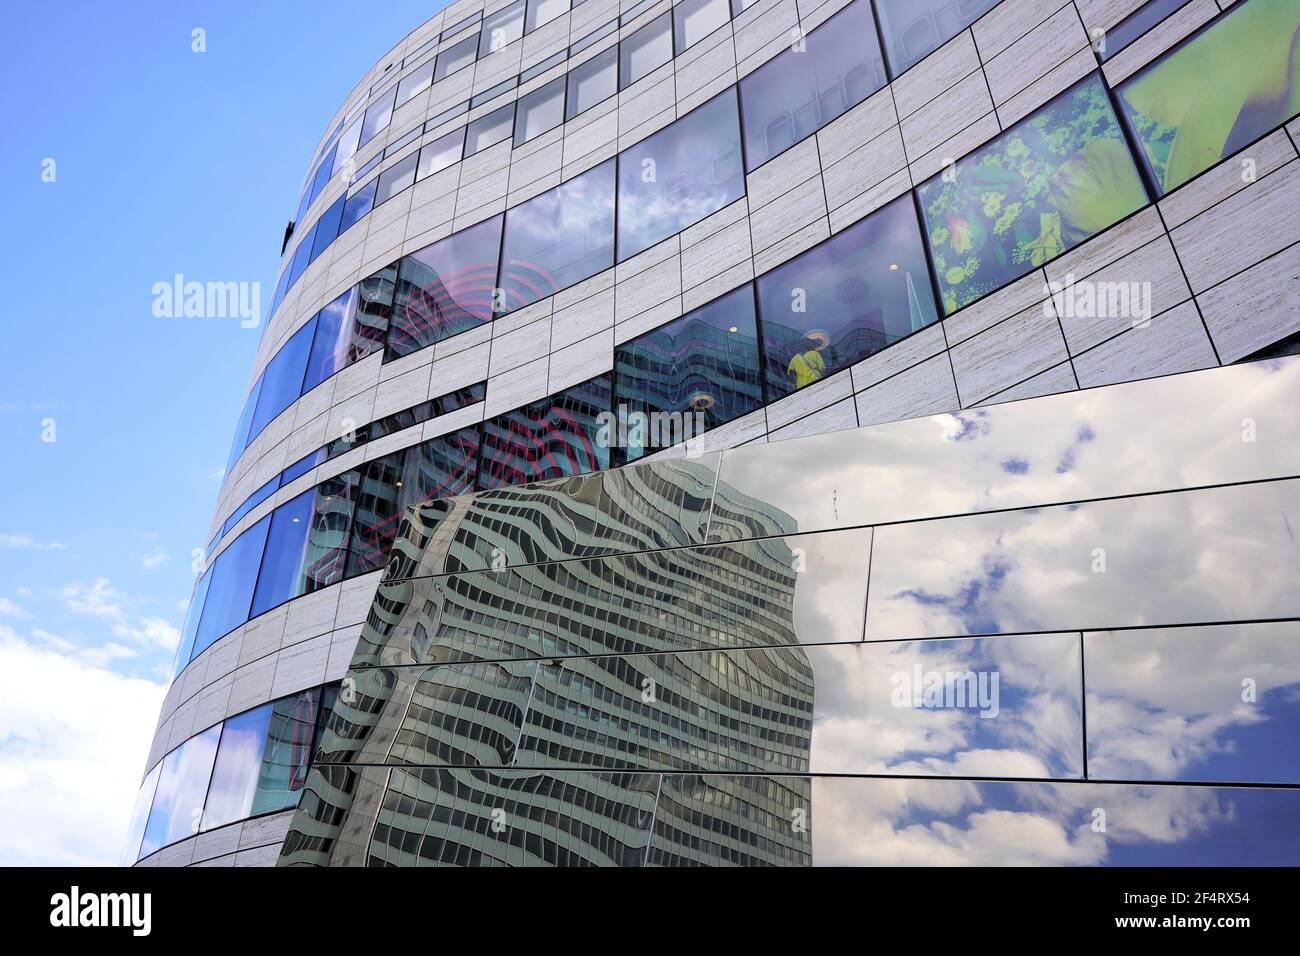 Détail des bâtiments modernes du complexe de l'architecte actuel Daniel Libeskind, conçu par l'architecte étoilé de New York, avec le reflet du bâtiment Dreischeibenhaus. Banque D'Images